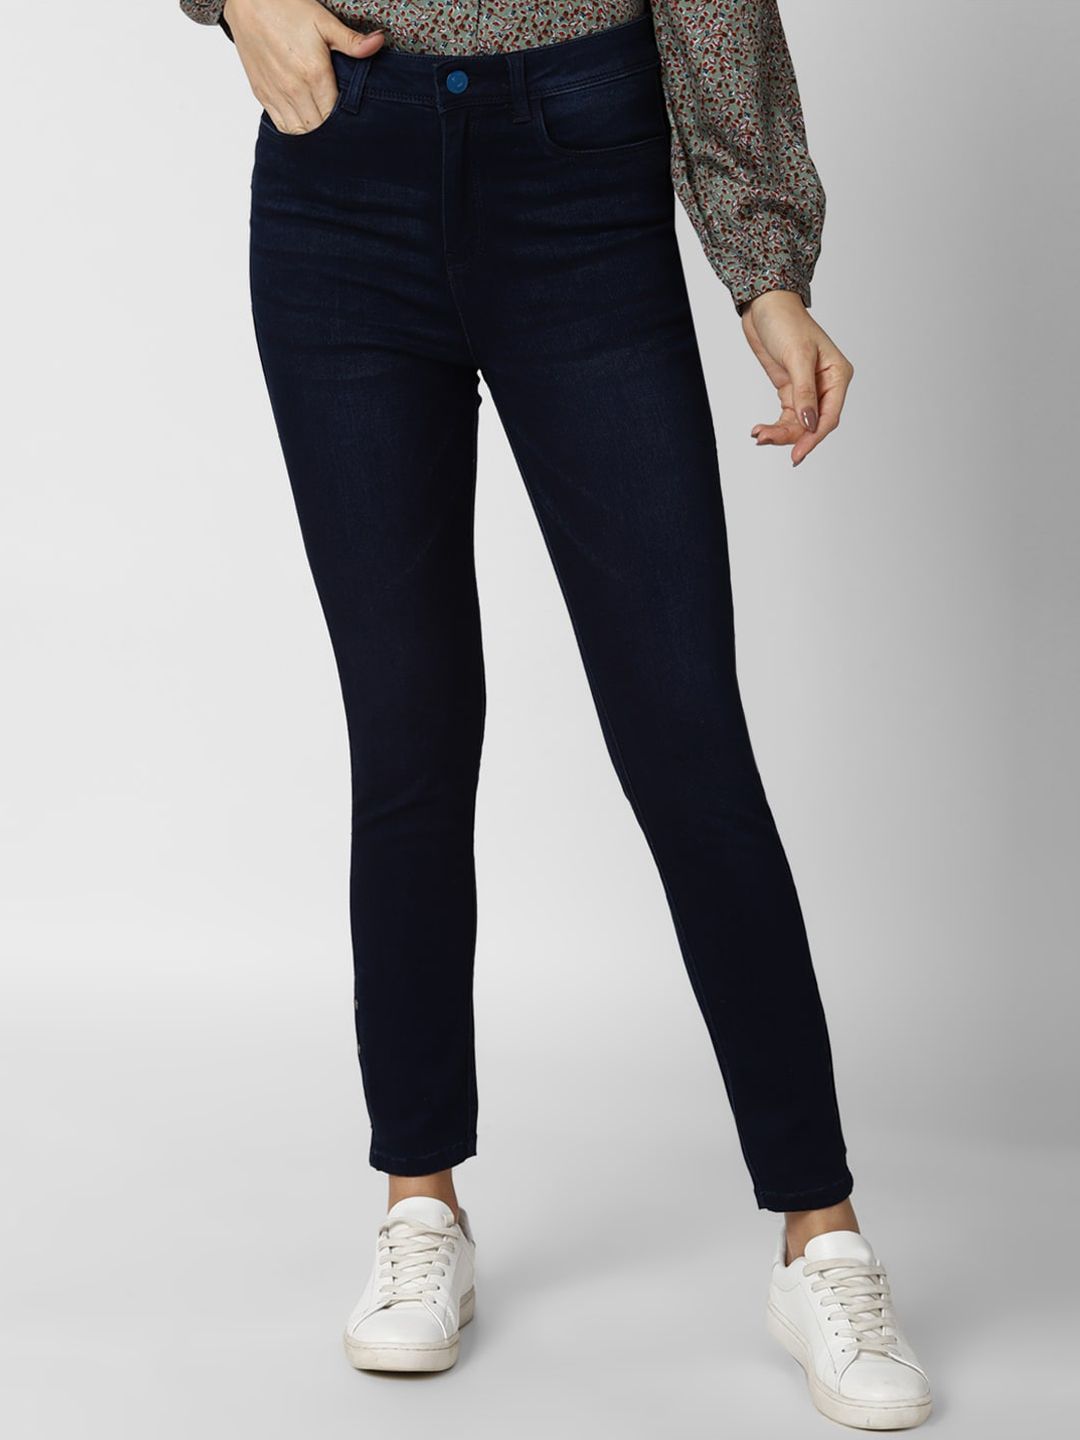 Van Heusen Woman Navy Blue Slim Fit Jeans Price in India